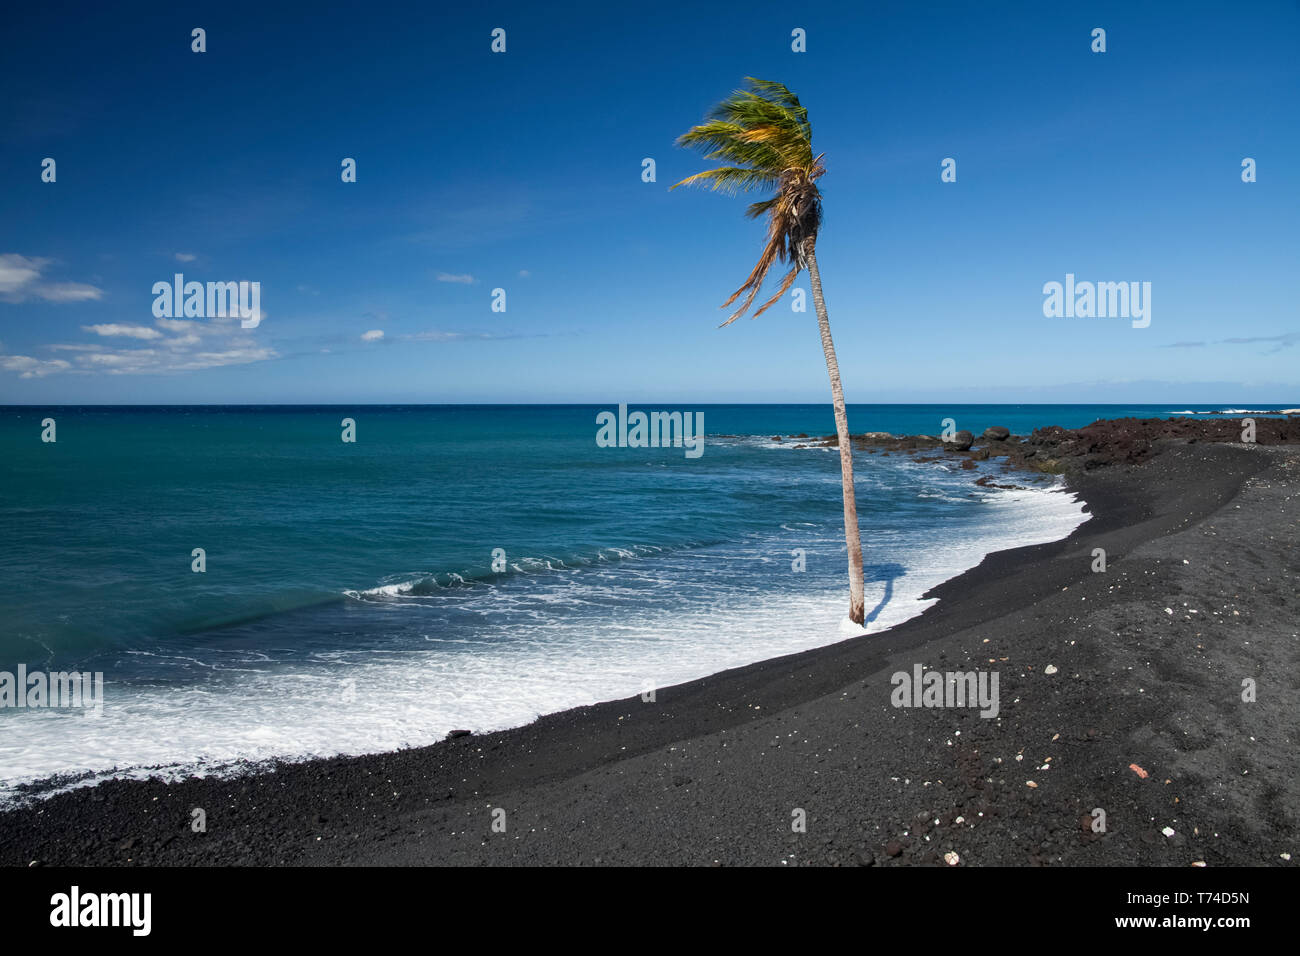 Lone Palm tree al bordo dell'acqua di una spiaggia di sabbia nera, Pueo Bay, a nord della costa di Kona; Kailua-Kona, isola di Hawaii, Hawaii, Stati Uniti d'America Foto Stock